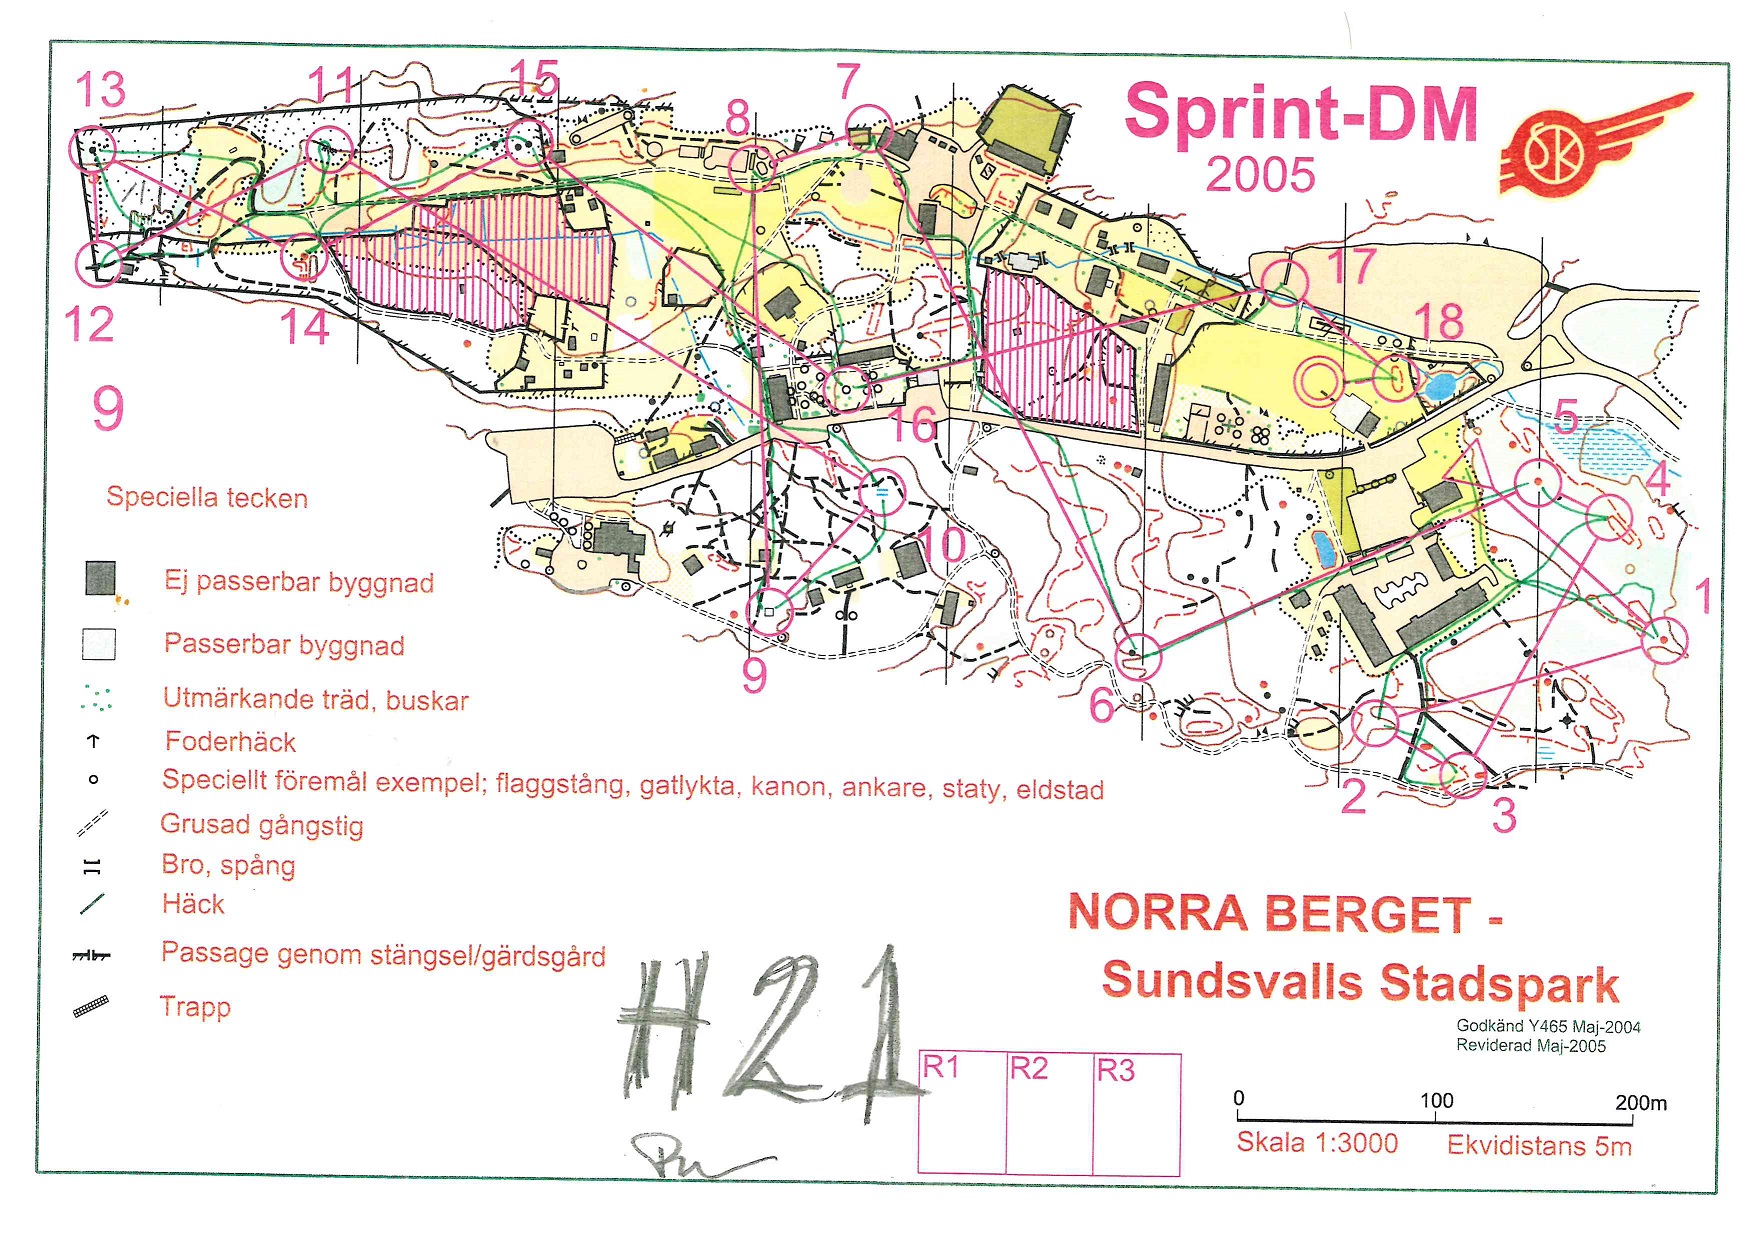 Sprint-DM, Norra Berget (01/06/2005)